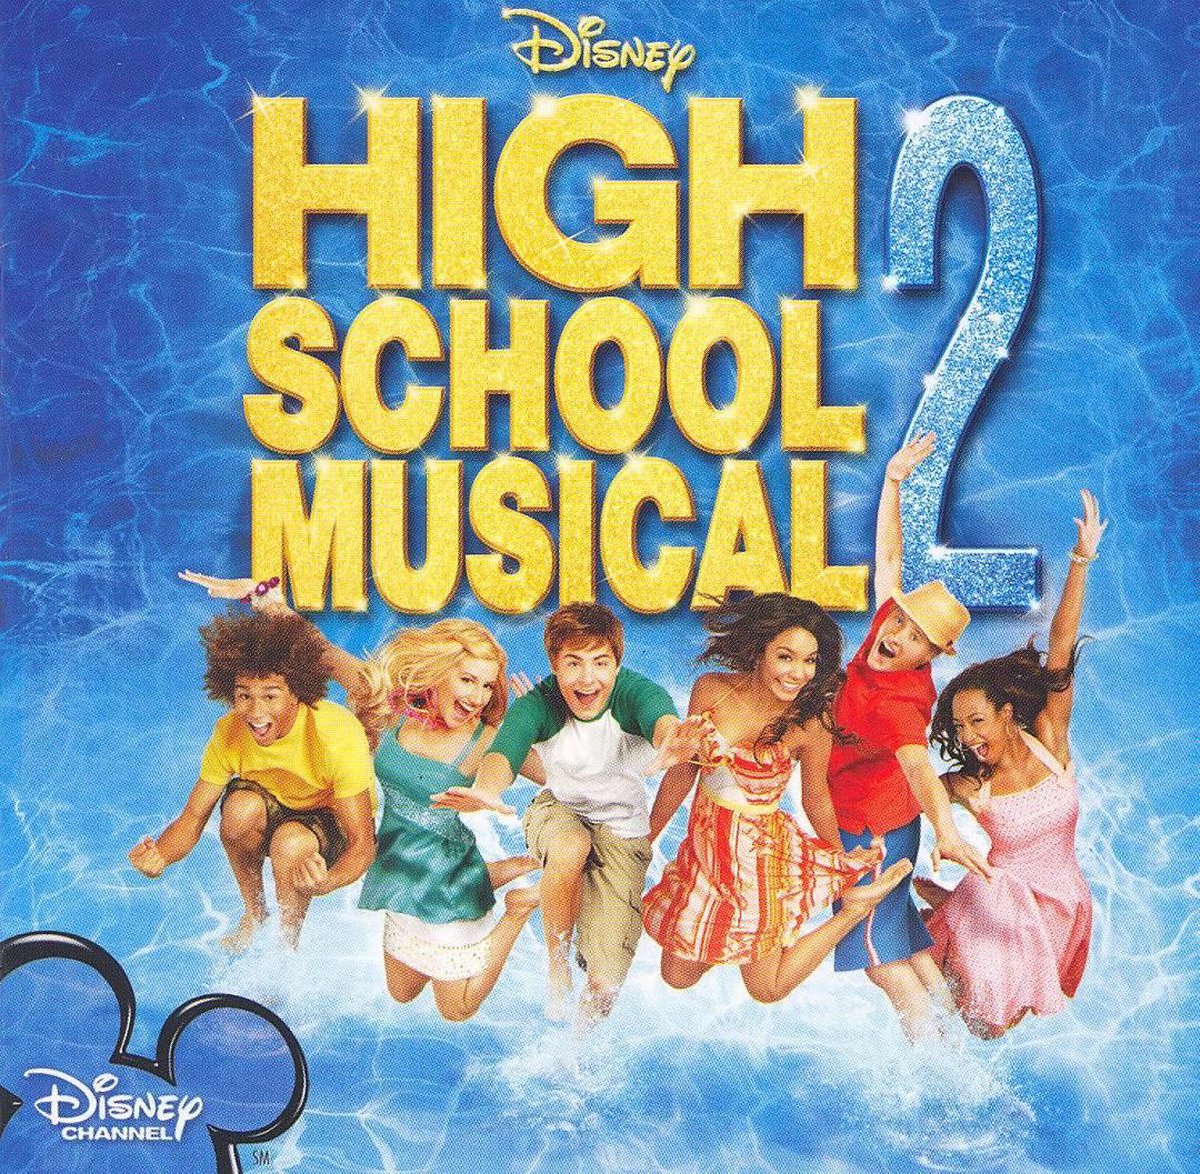 High School Musical 2 [Original Soundtrack] - Original Soundtrack